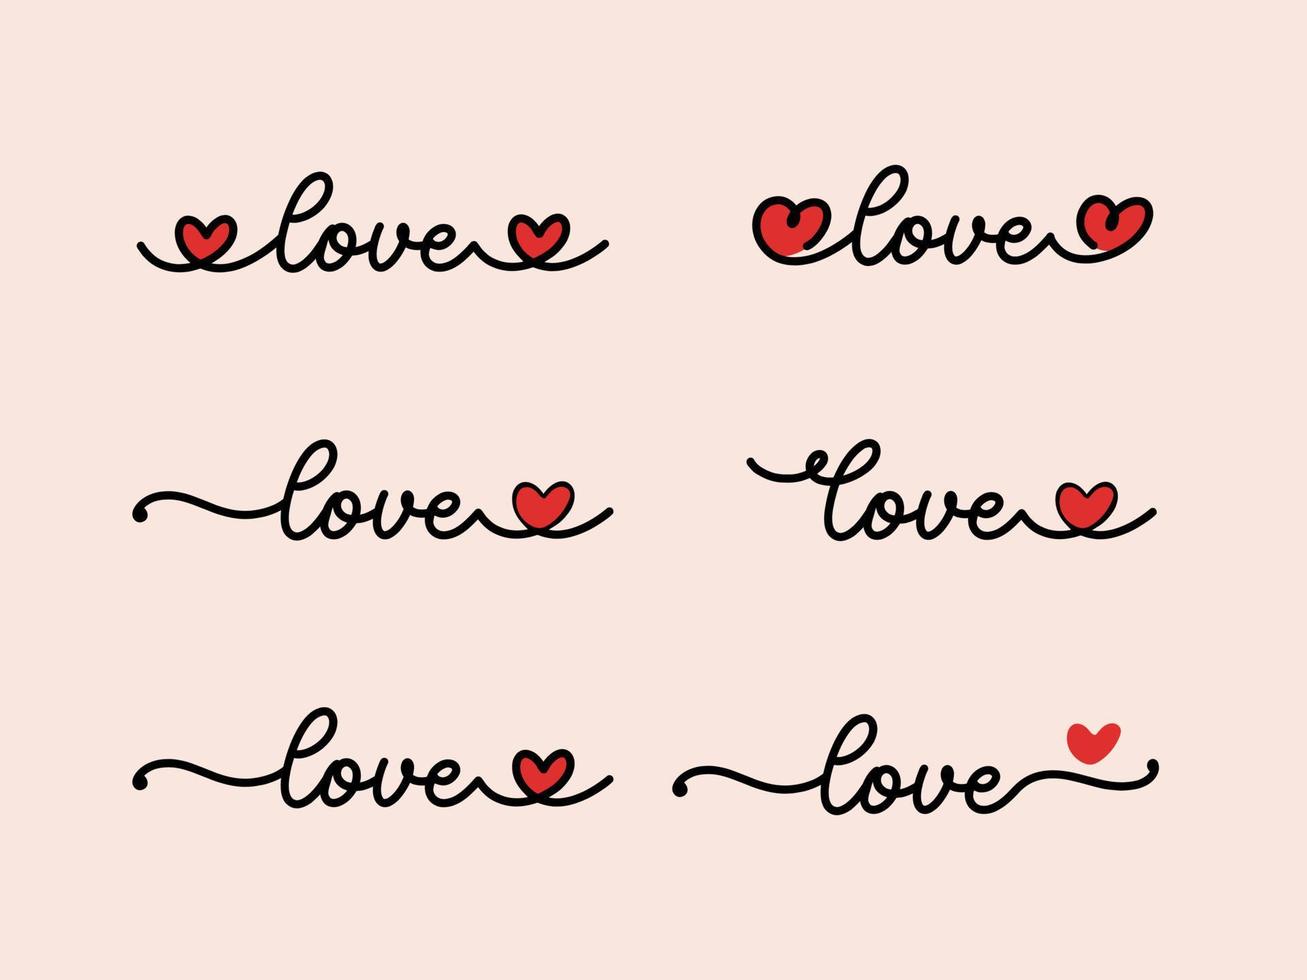 handbeschriftung valentinstag liebe herz typografie set zitate kalligraphie valentinstag grußkarte hintergrund vektor